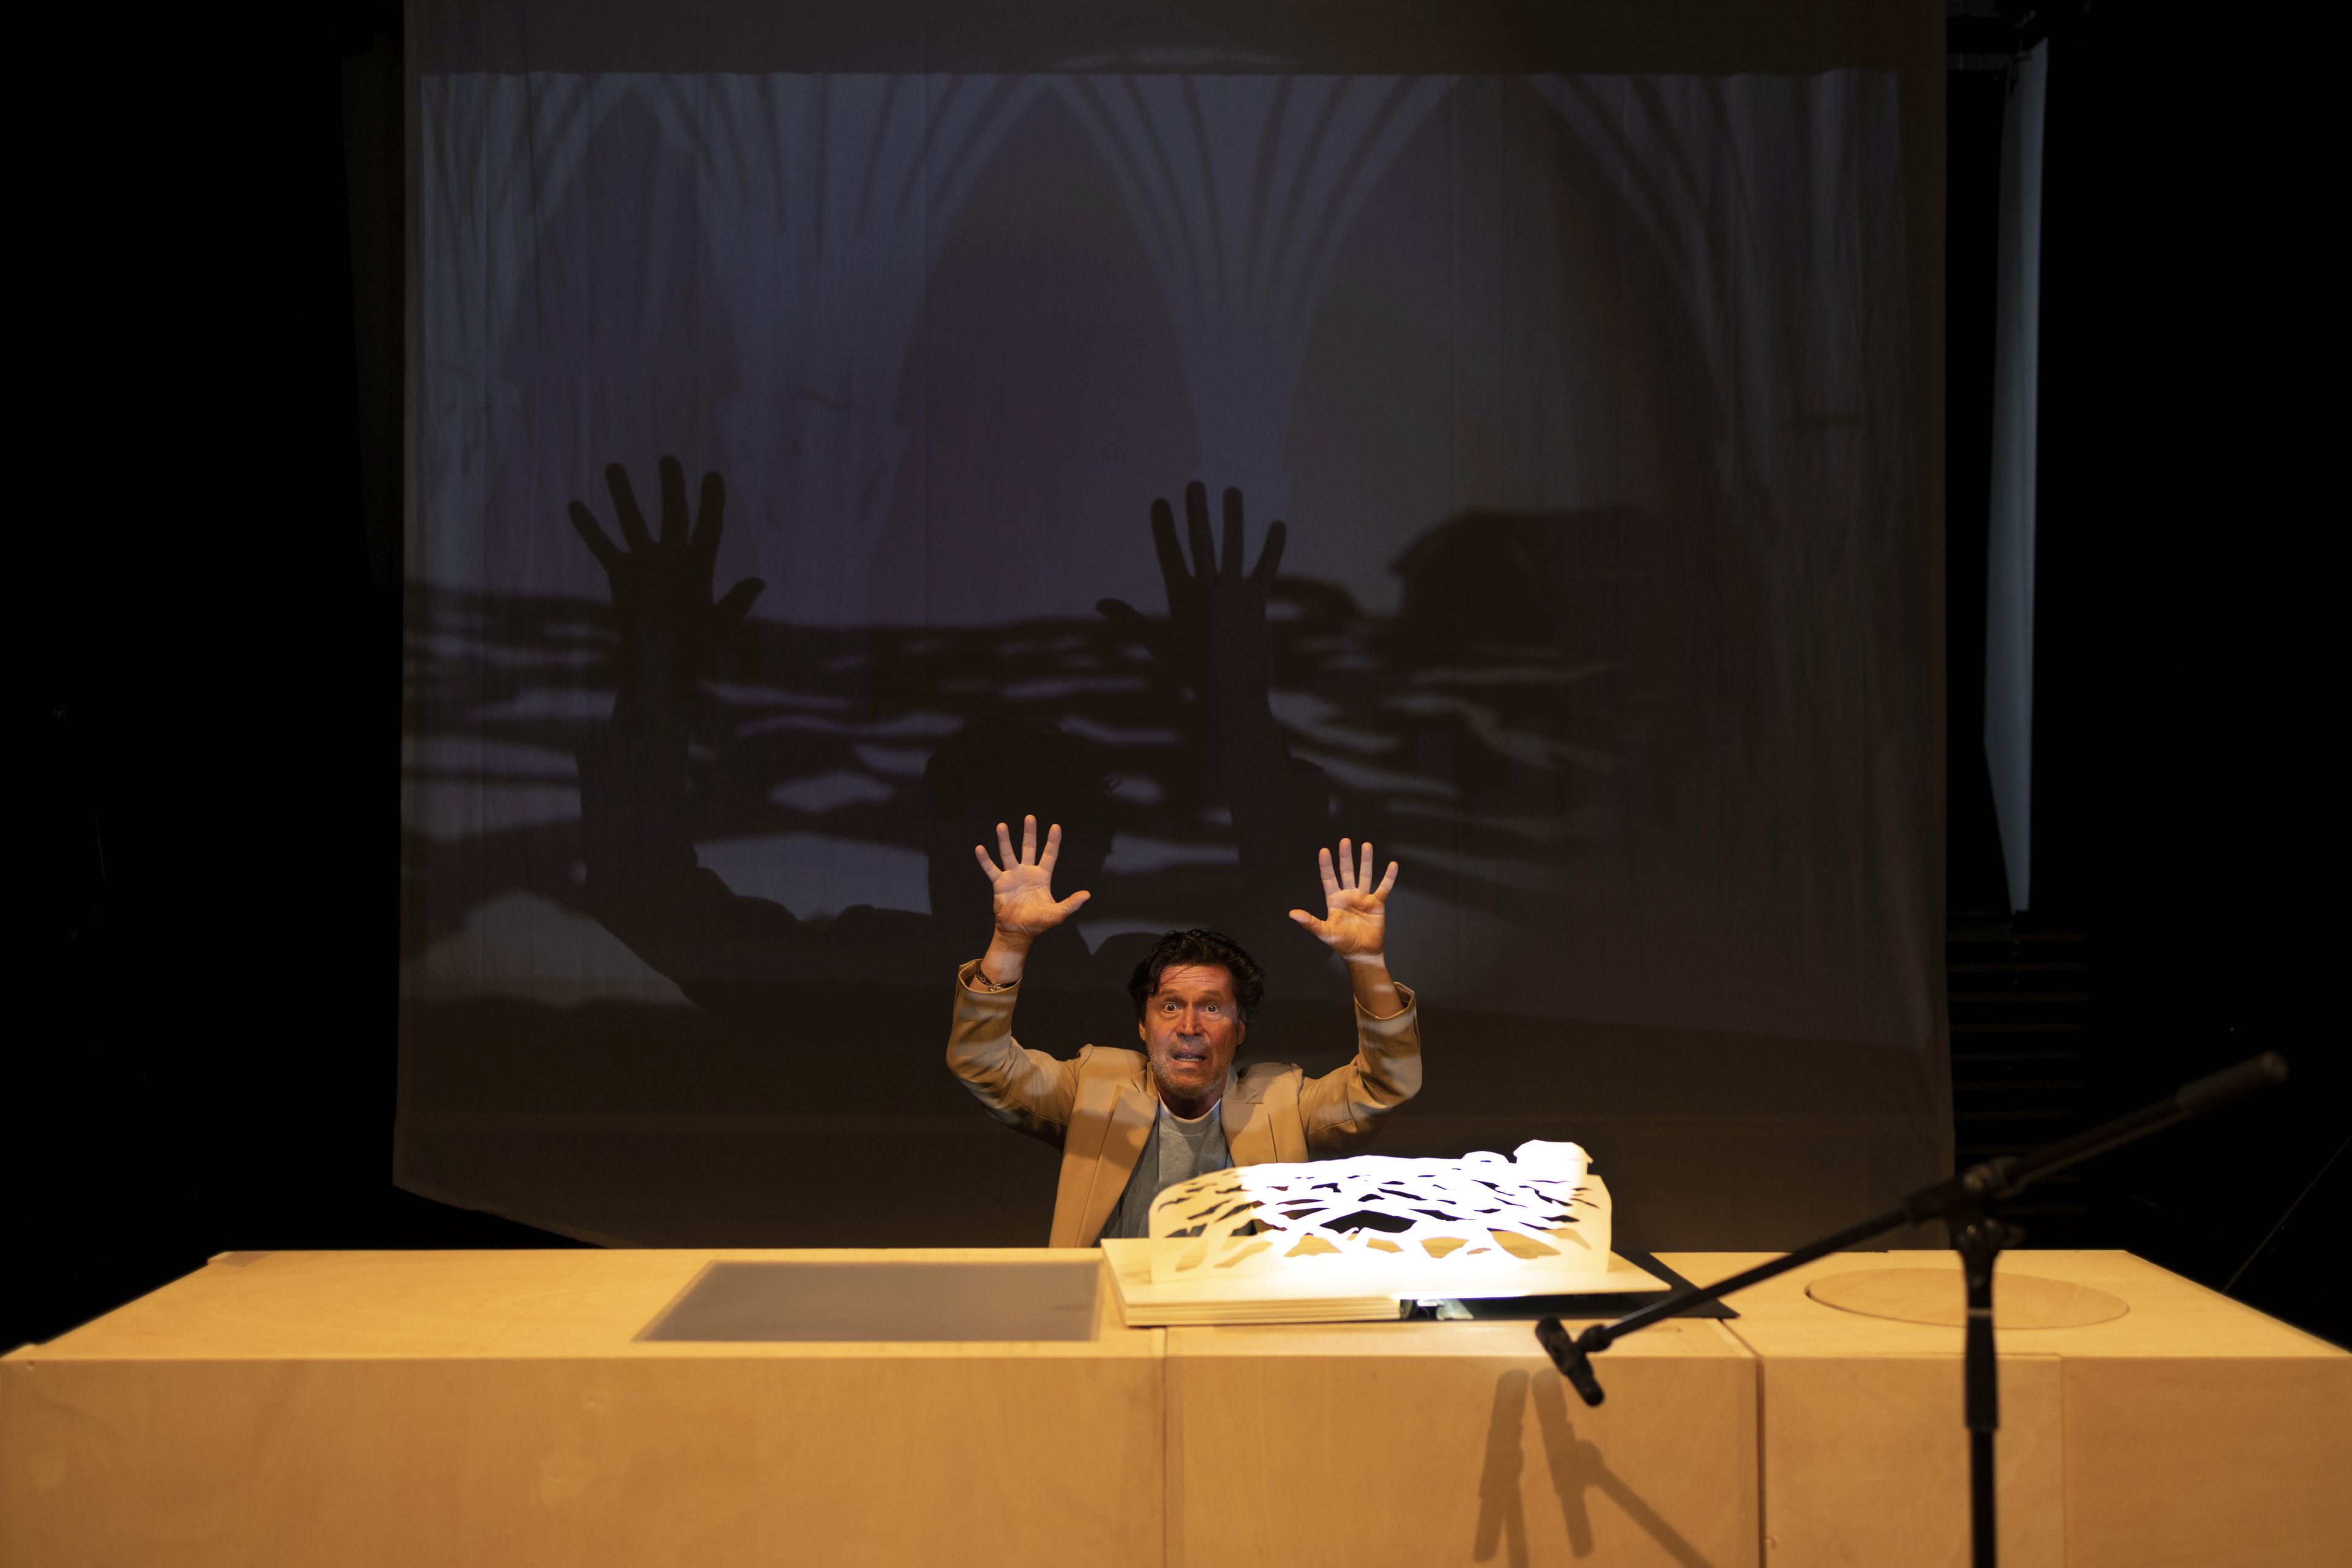 Auf der Bühne steht ein Tisch, auf dem ein Muster aus Papier angeleuchtet wird. Im Hintergrund erscheint dessen Schatten als Meer auf einer Projektionswand. Davor ist ein Schauspieler mit erhobenen Händen abgebildet. Es wirkt, als ob er im Wasser versinkt.